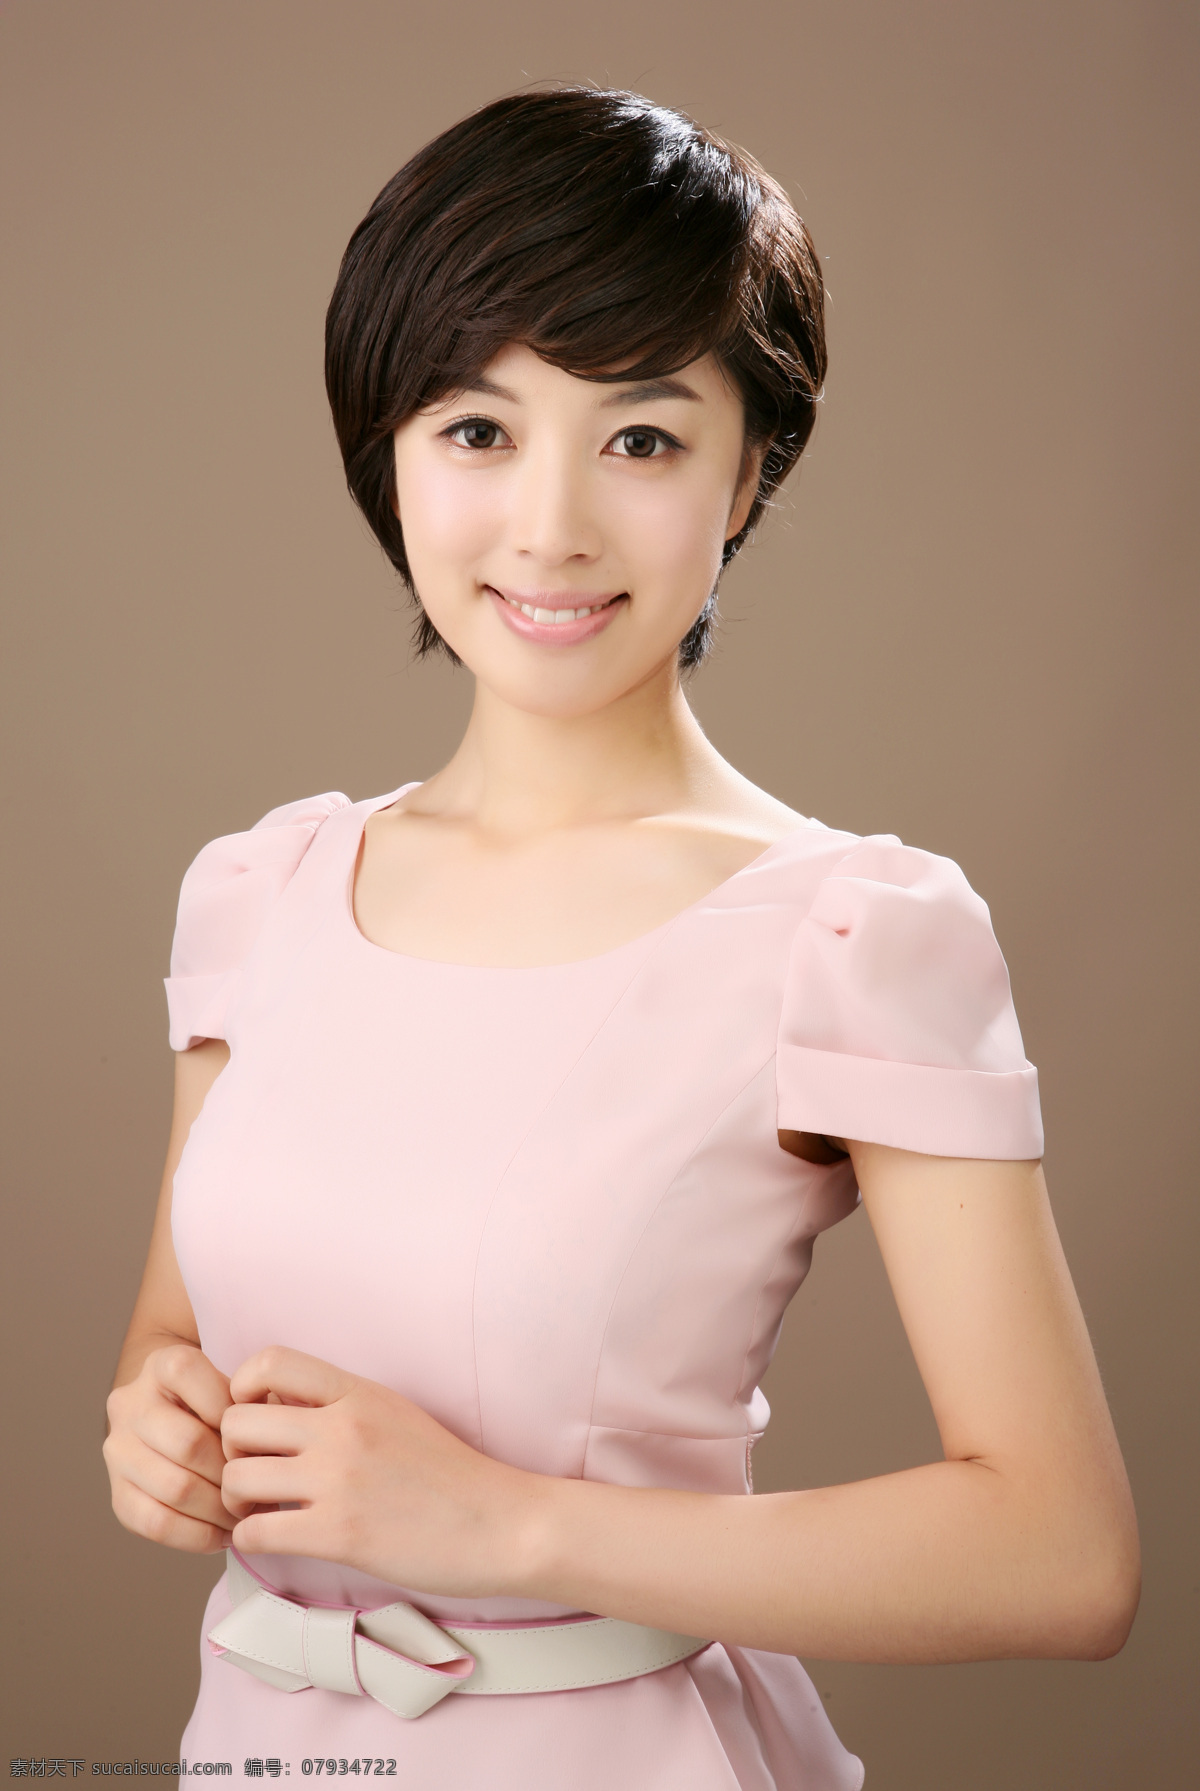 韩国少女 漂亮 清纯 微笑 粉色 连衣裙 女性女人 人物图库